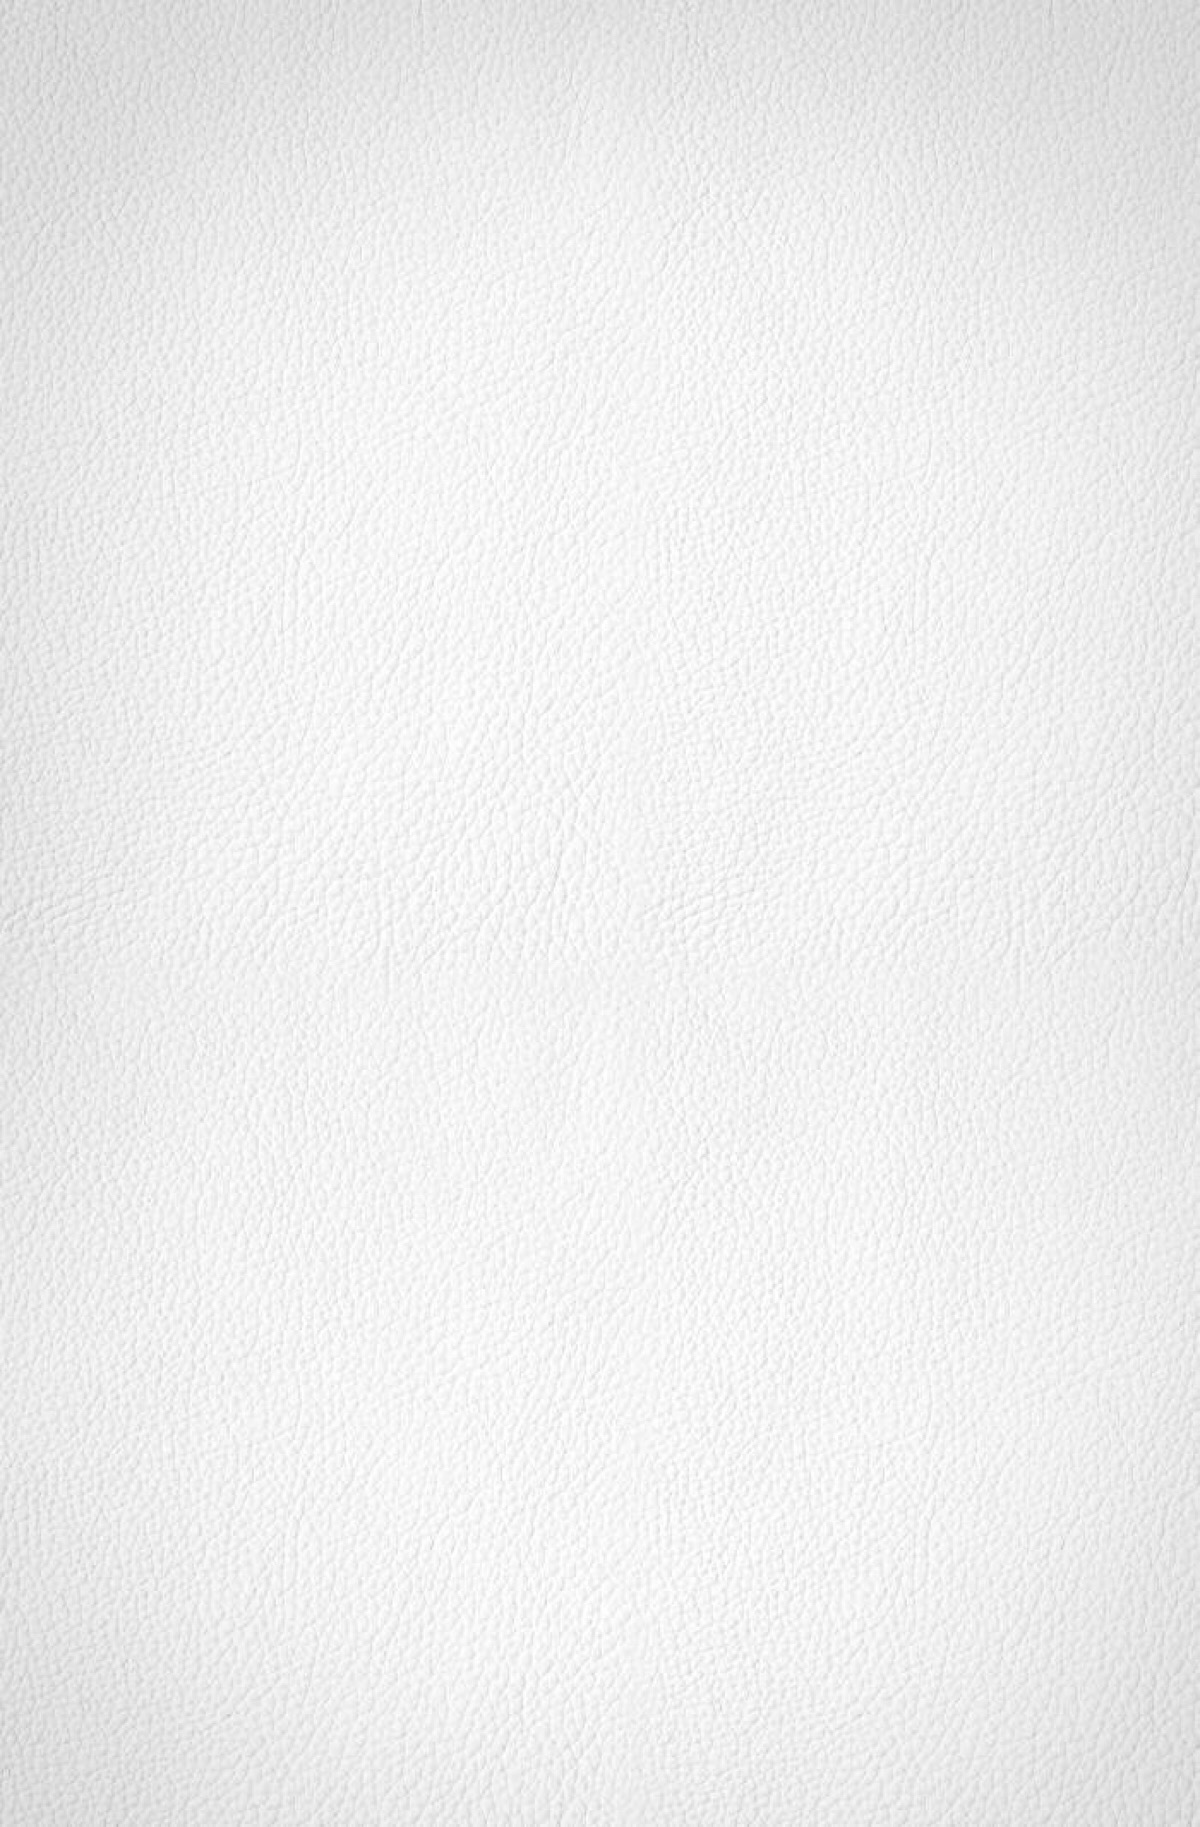 手机壁纸纯白 白色图片